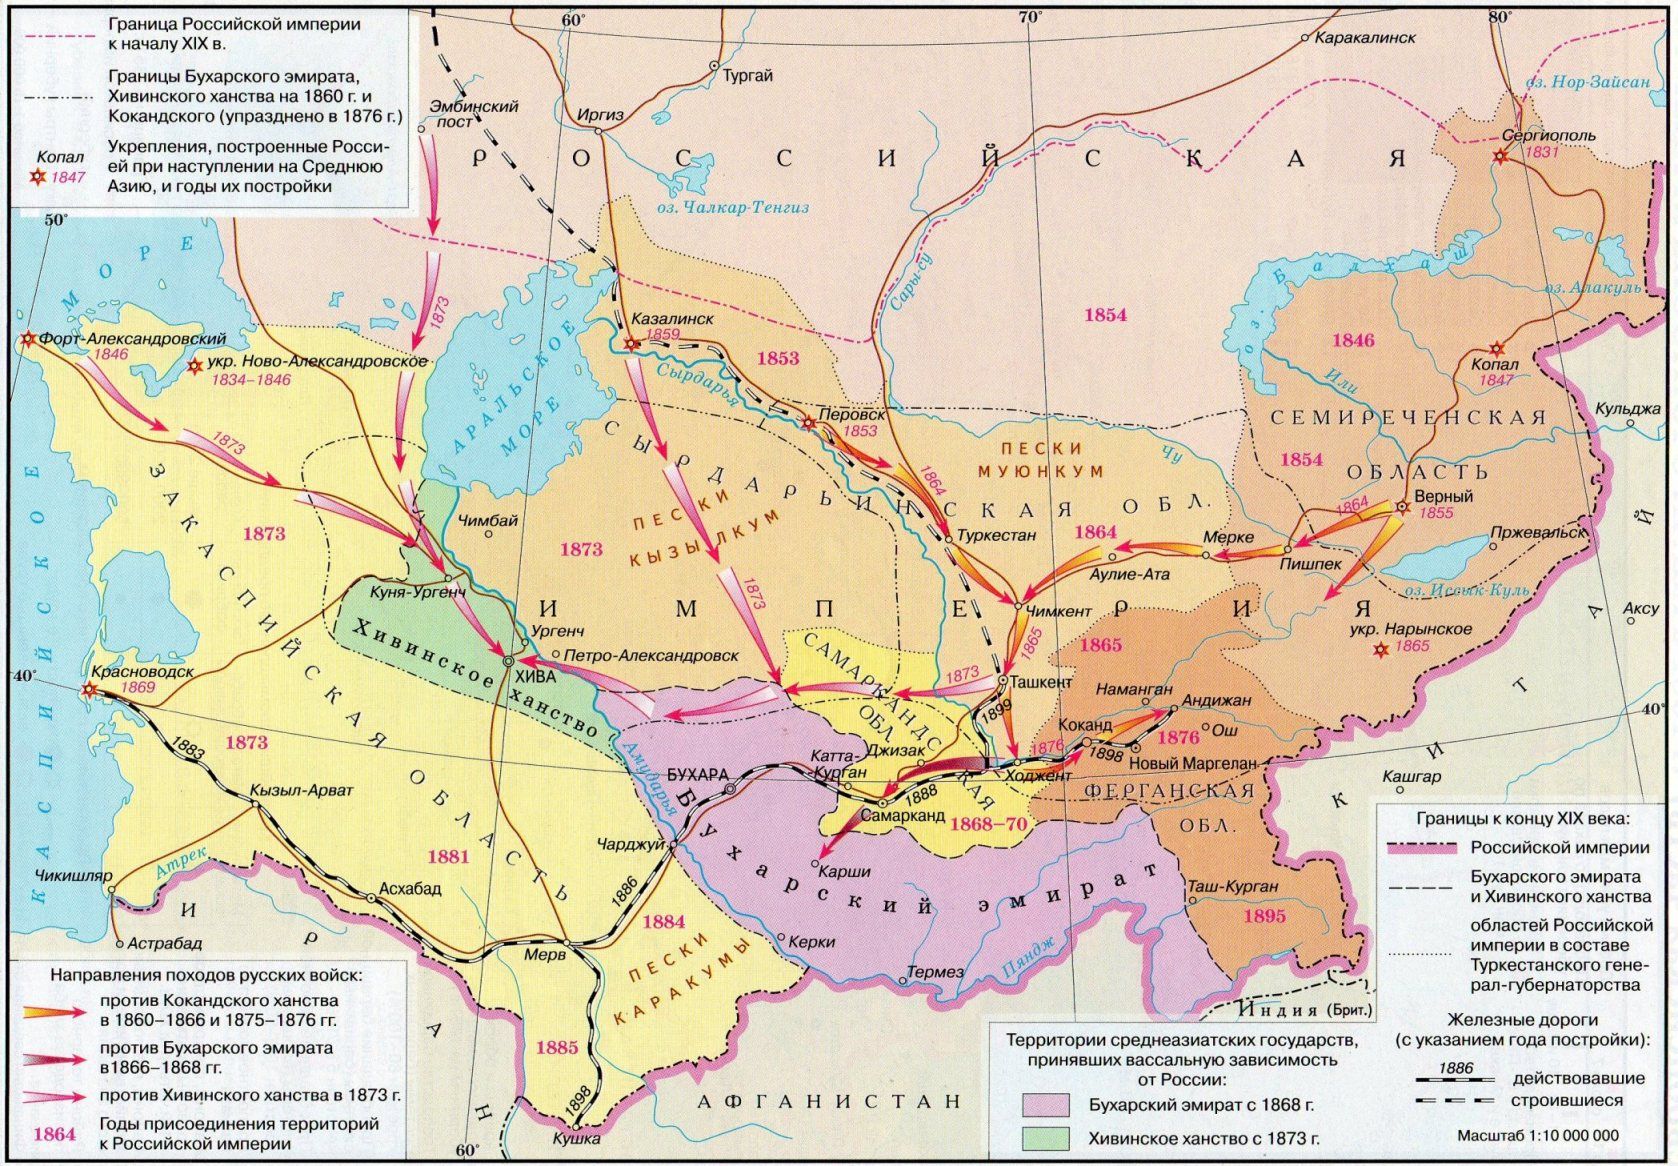 Присоединение Центральной Азии